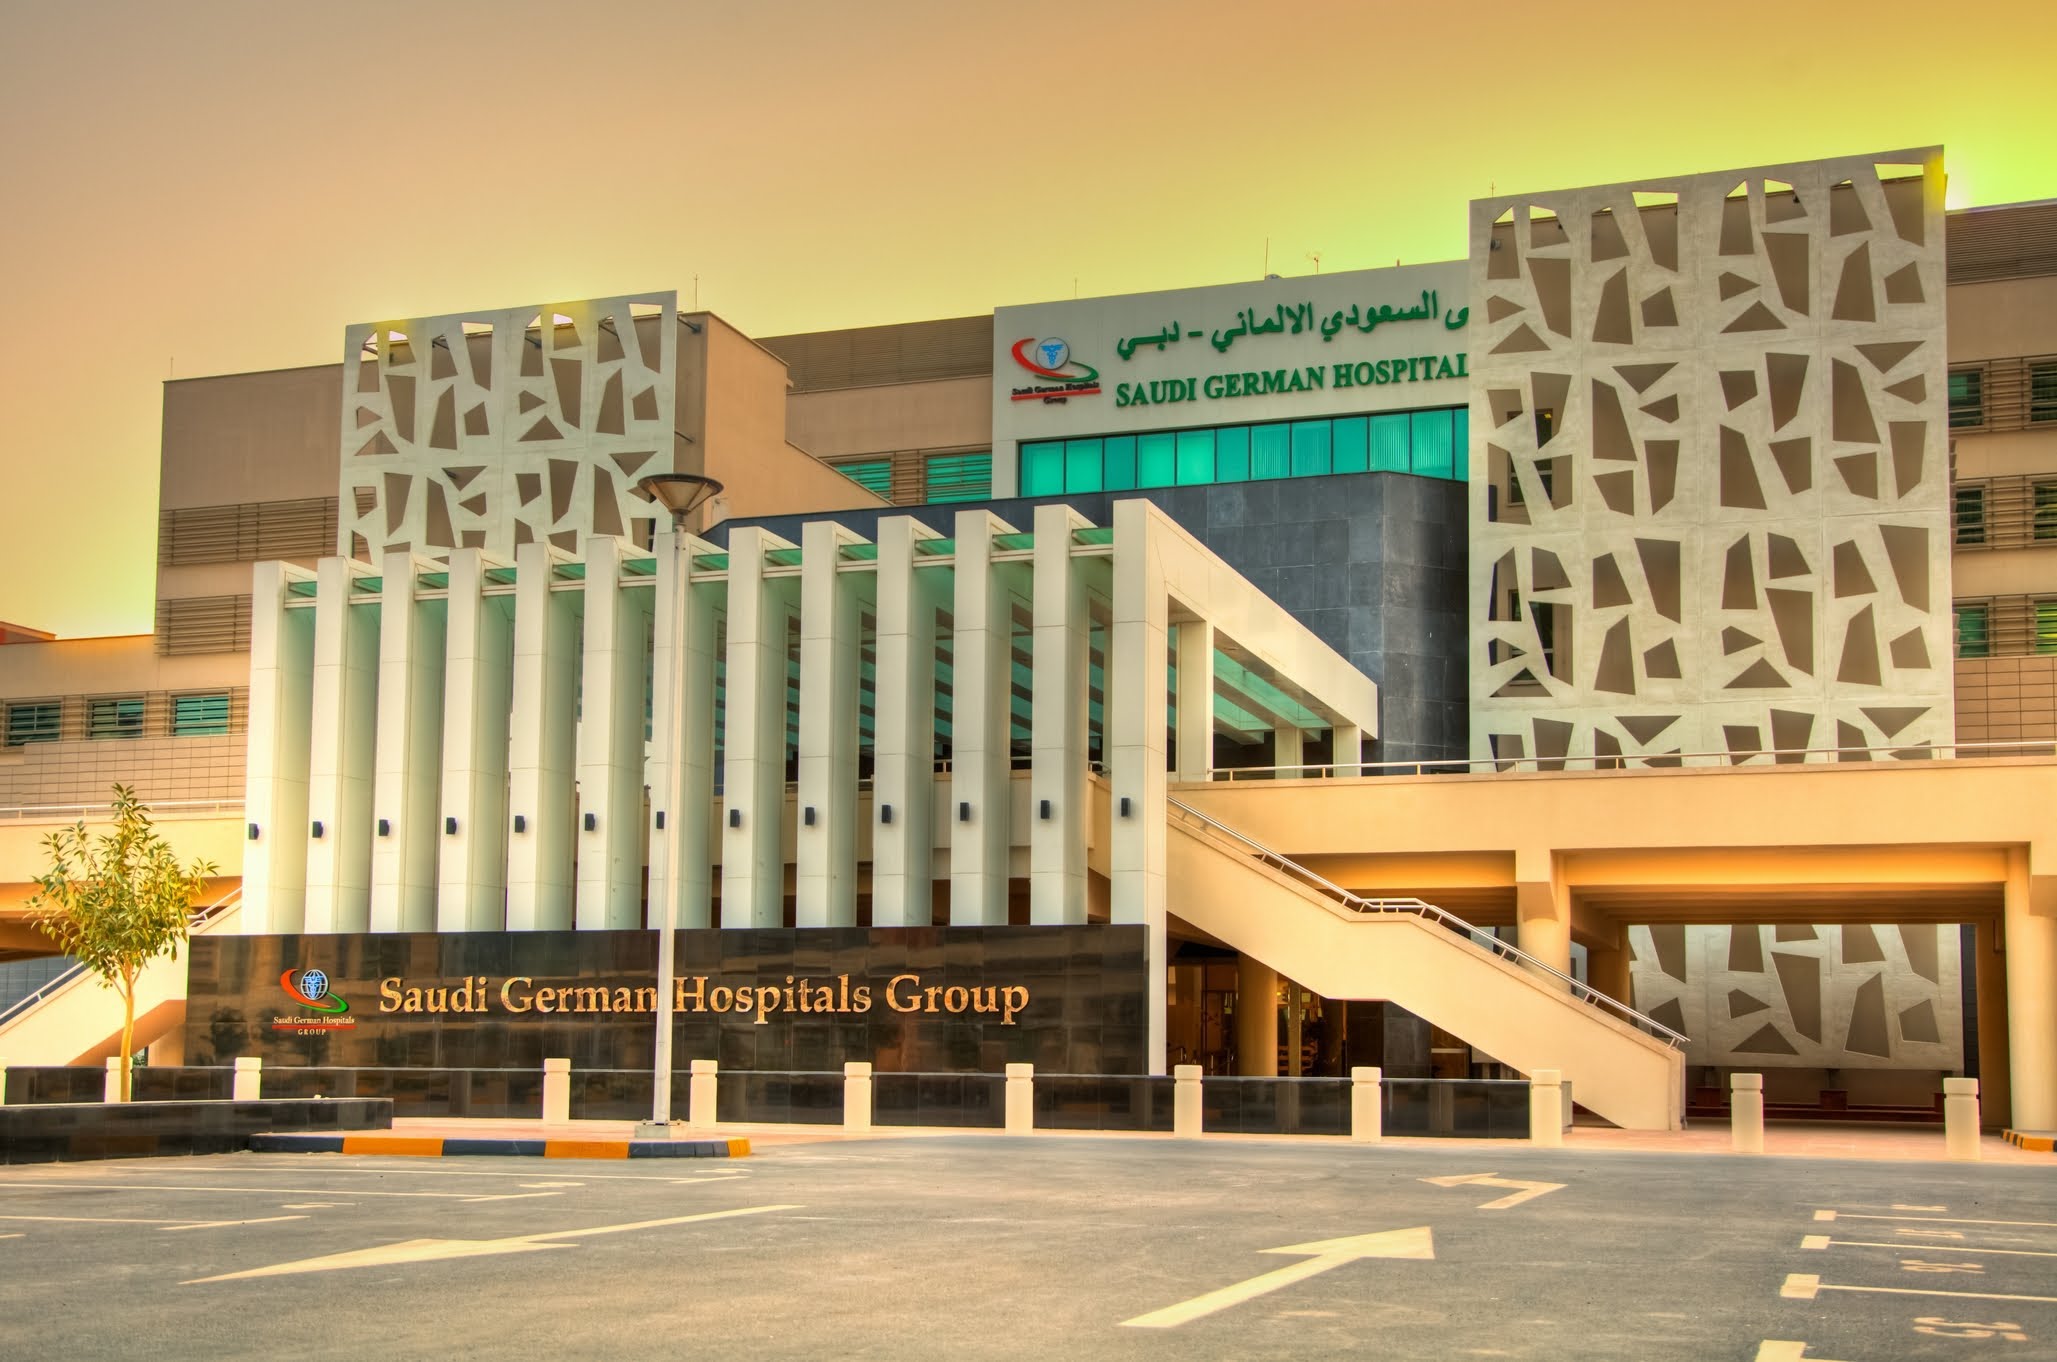 المستشفى السعودي الألماني بدبي